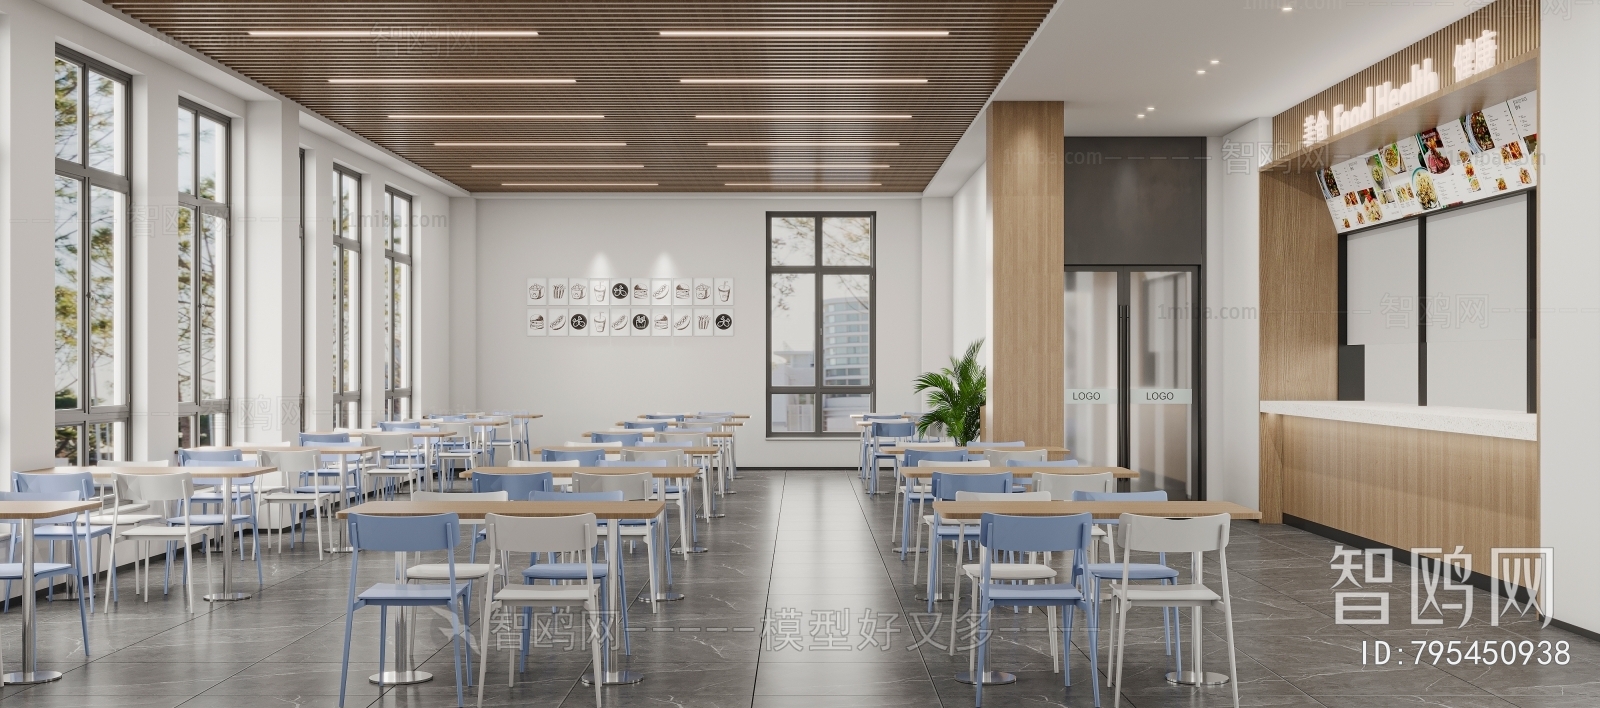 现代食堂餐厅3D模型下载